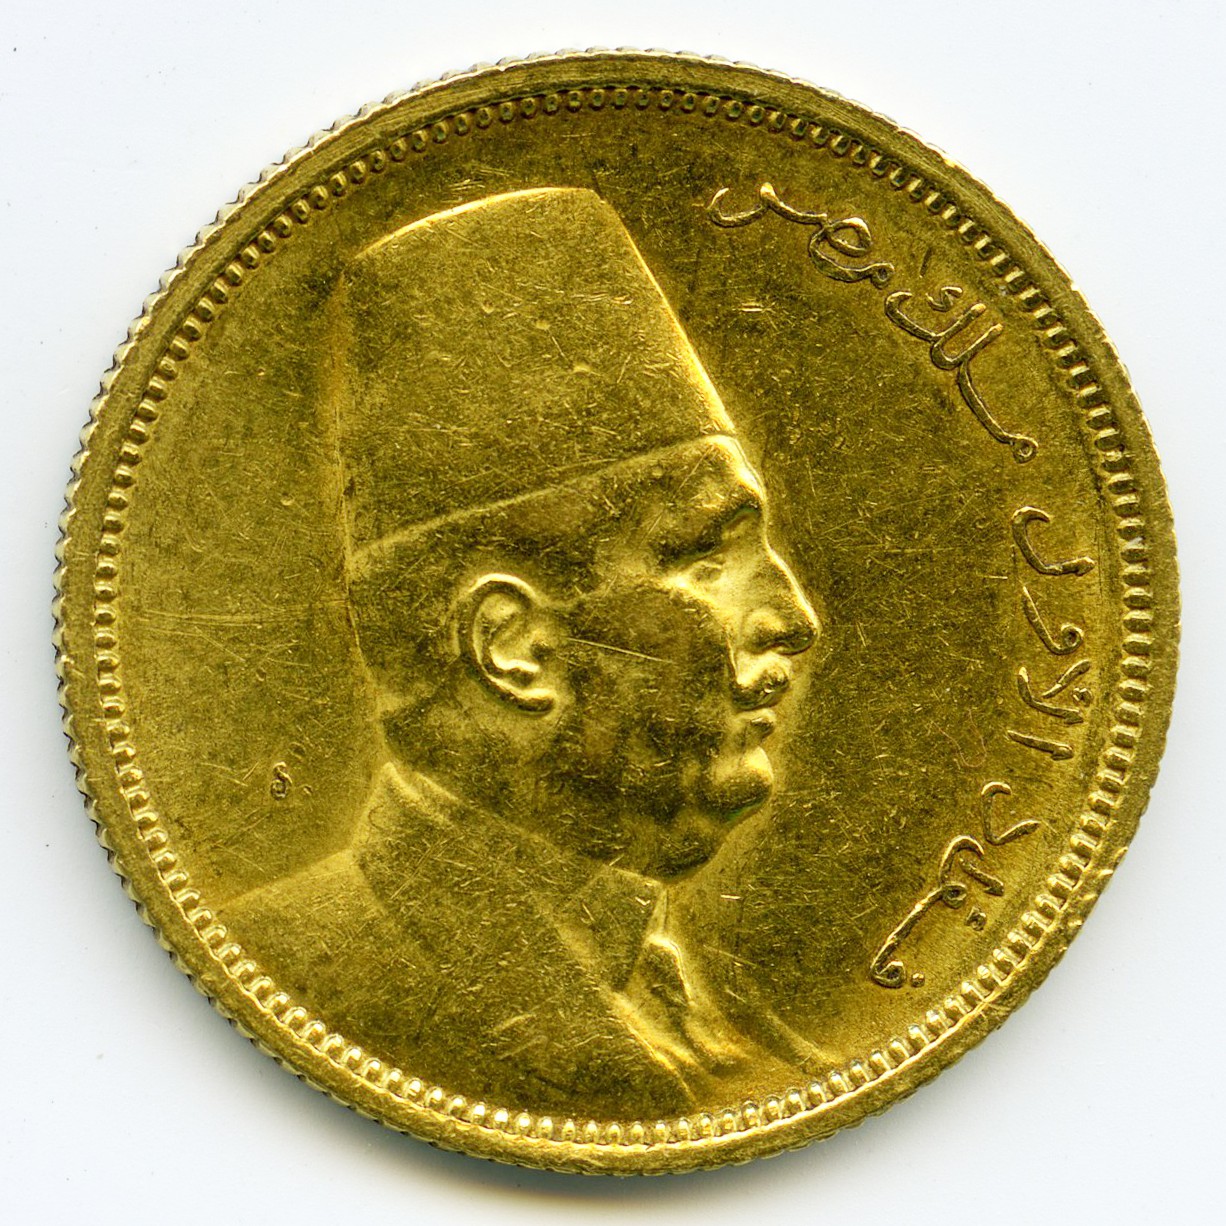 Egypte - 100 Piastres - 1922 avers